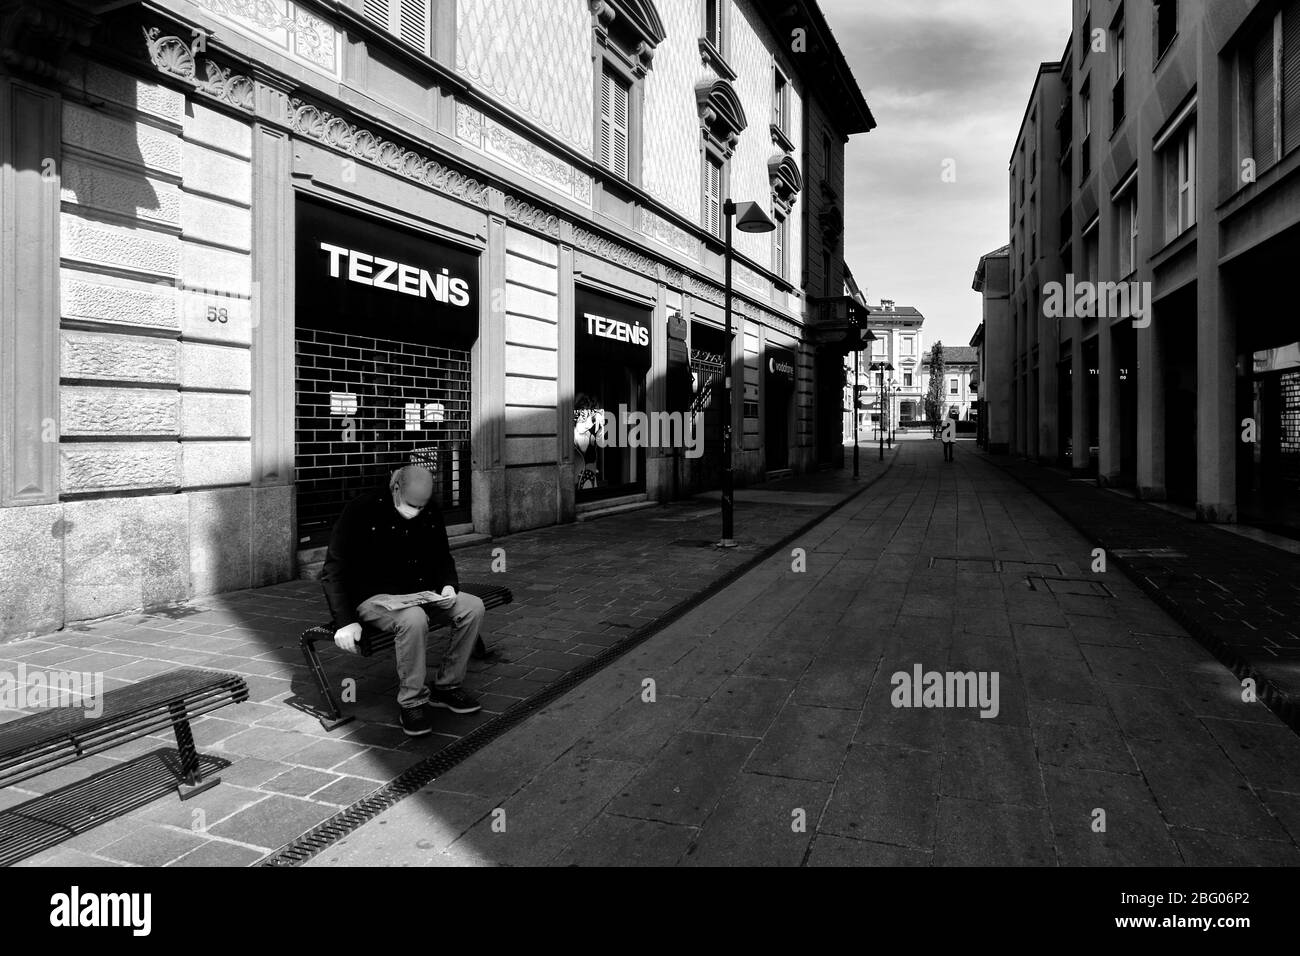 Il silenzio e la desolazione in una città vicino a Milano, domenica mattina, durante Coronavirus. Nella strada principale solo due persone, una a piedi, l'altra Foto Stock